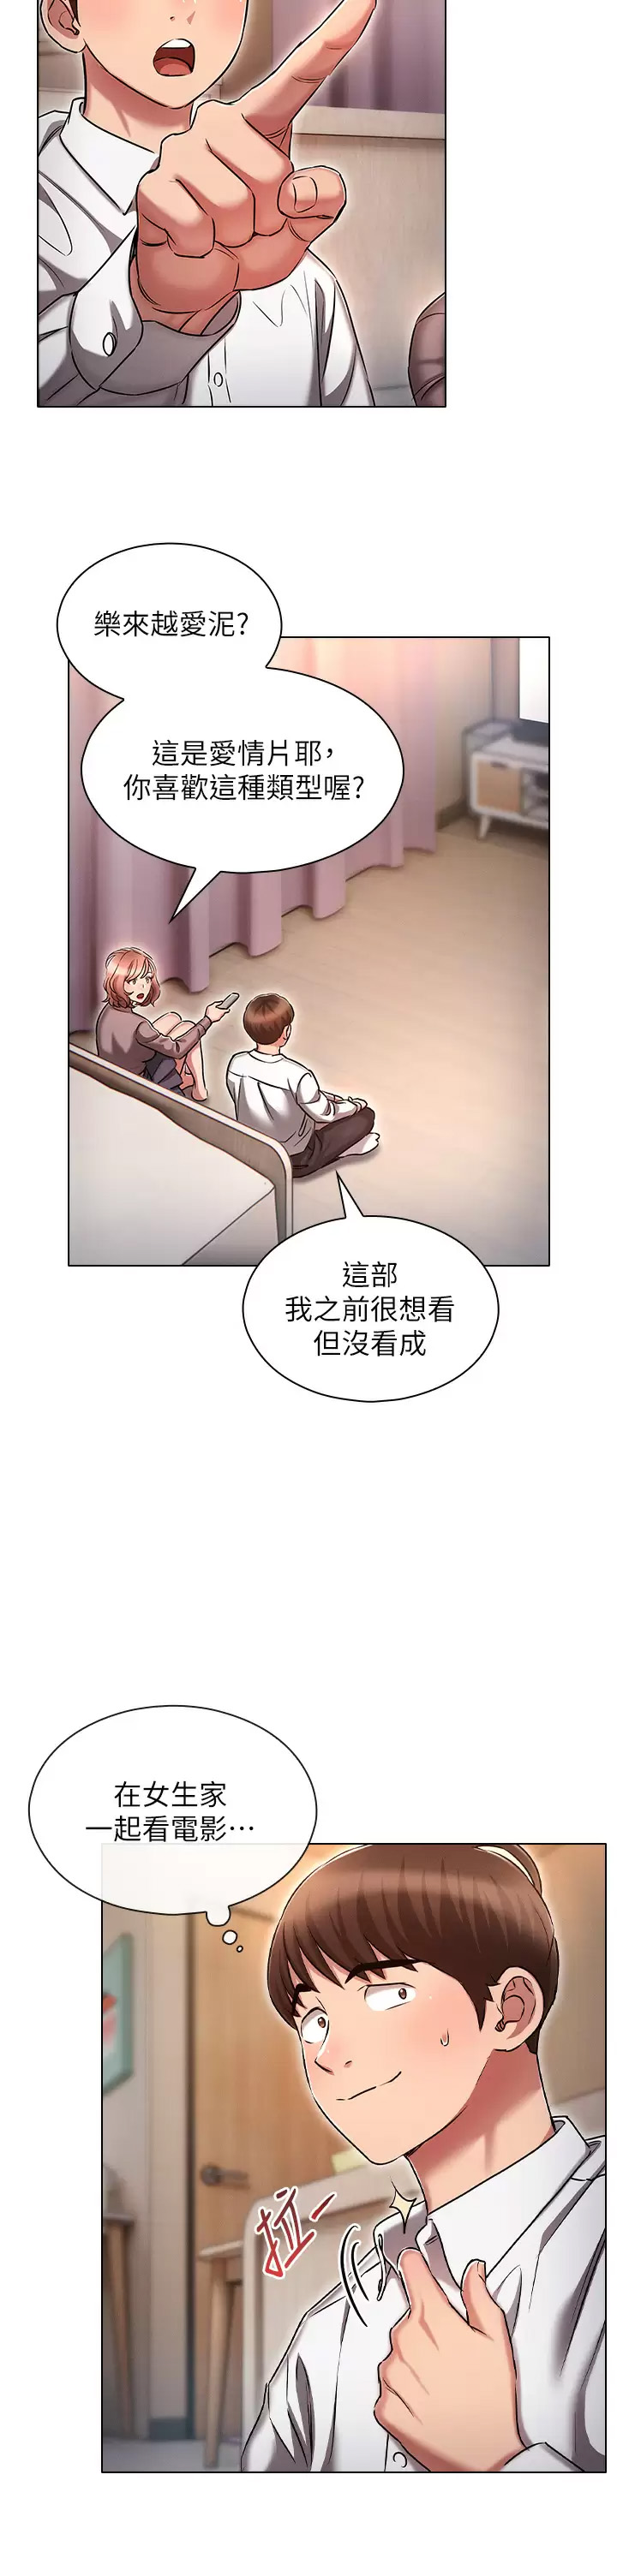 韩国污漫画 魯蛇的多重宇宙 第13话 满溢的暧昧情欲 22